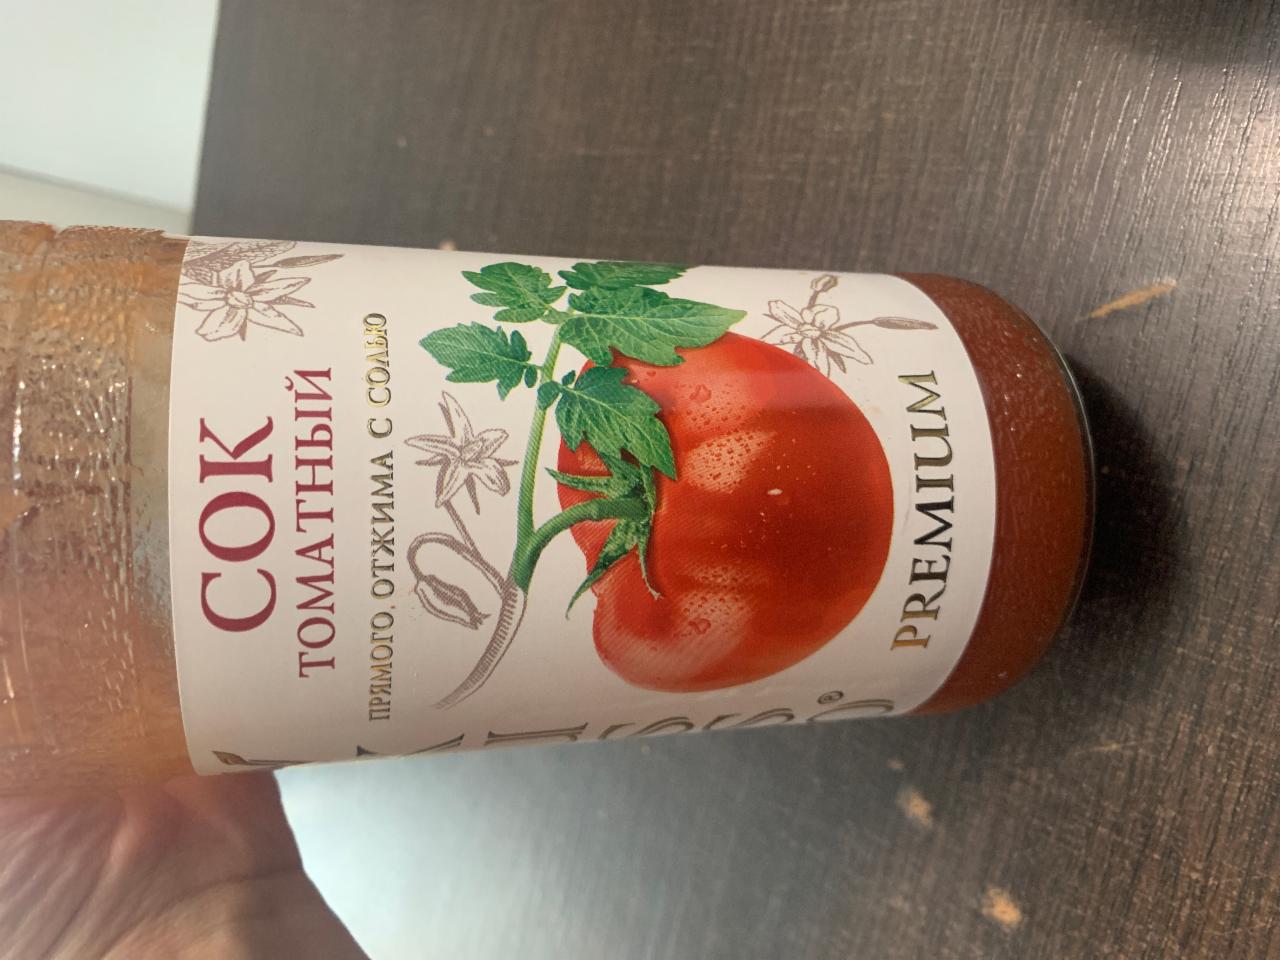 Фото - сок томатный прямого отжима Vkusso